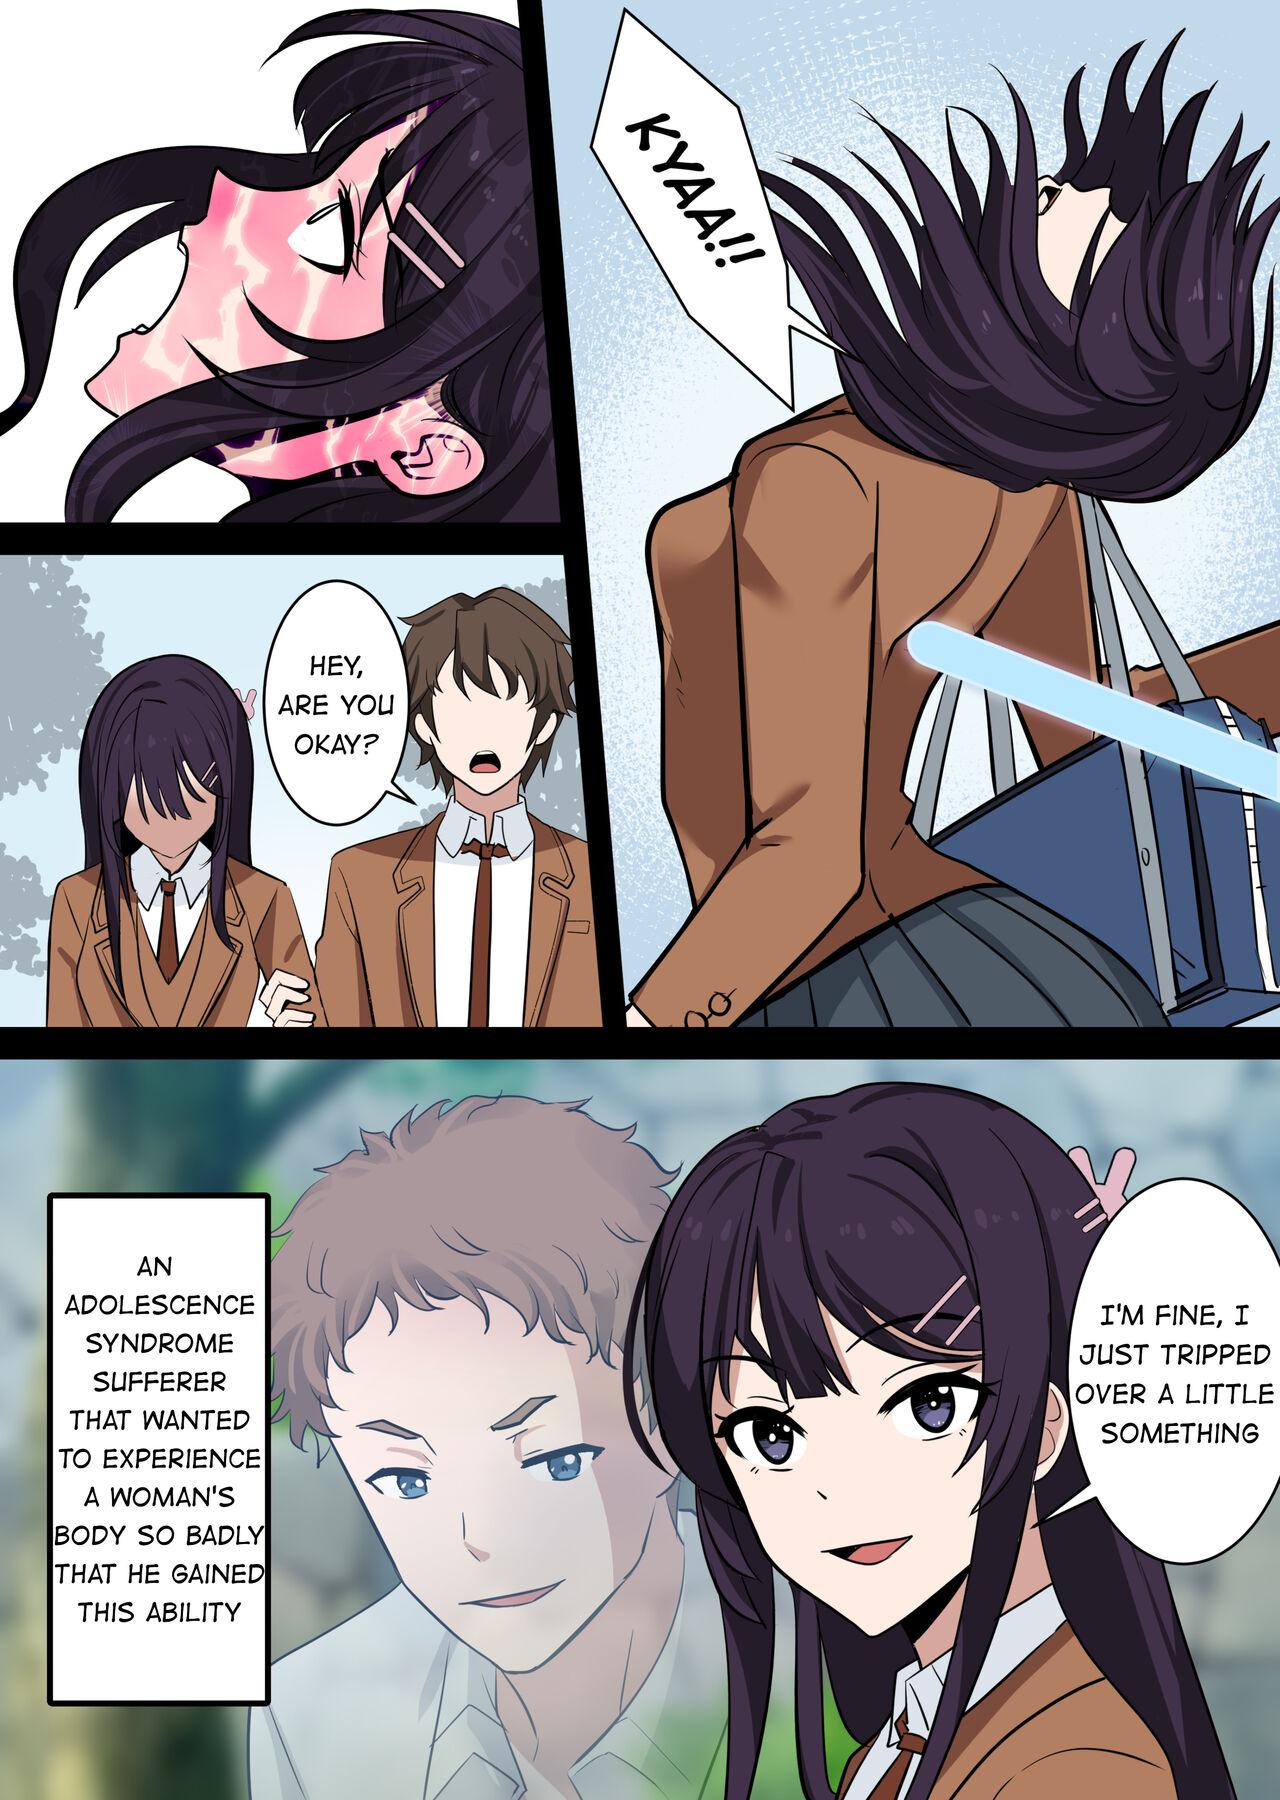 Fucking Possessing Sakurajima Mai and Cucking Her Lover - Seishun buta yarou wa bunny girl senpai no yume o minai Fishnet - Page 2